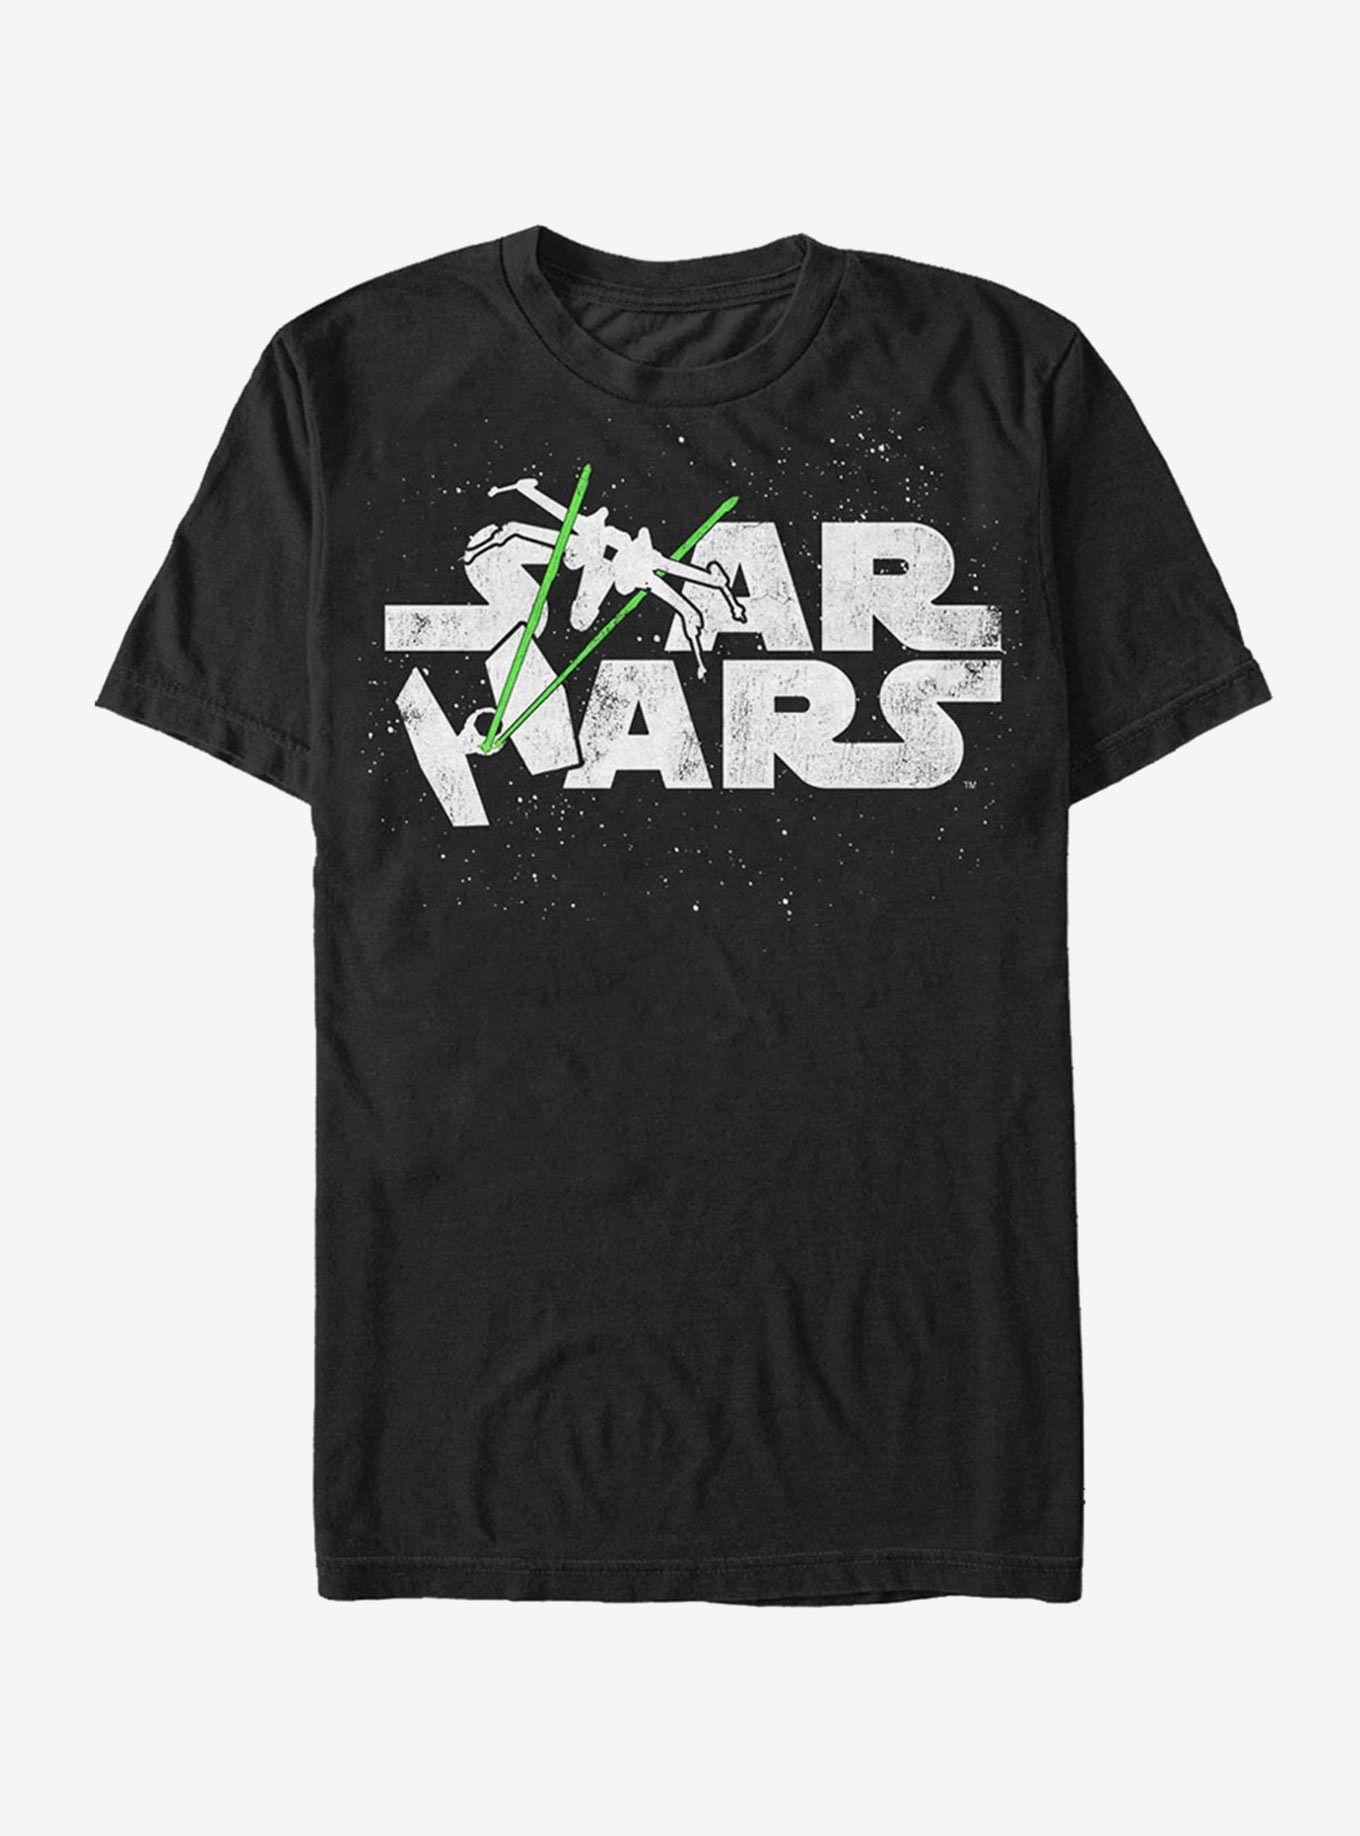 Starship Logo - Star Wars Starship Logo T-Shirt